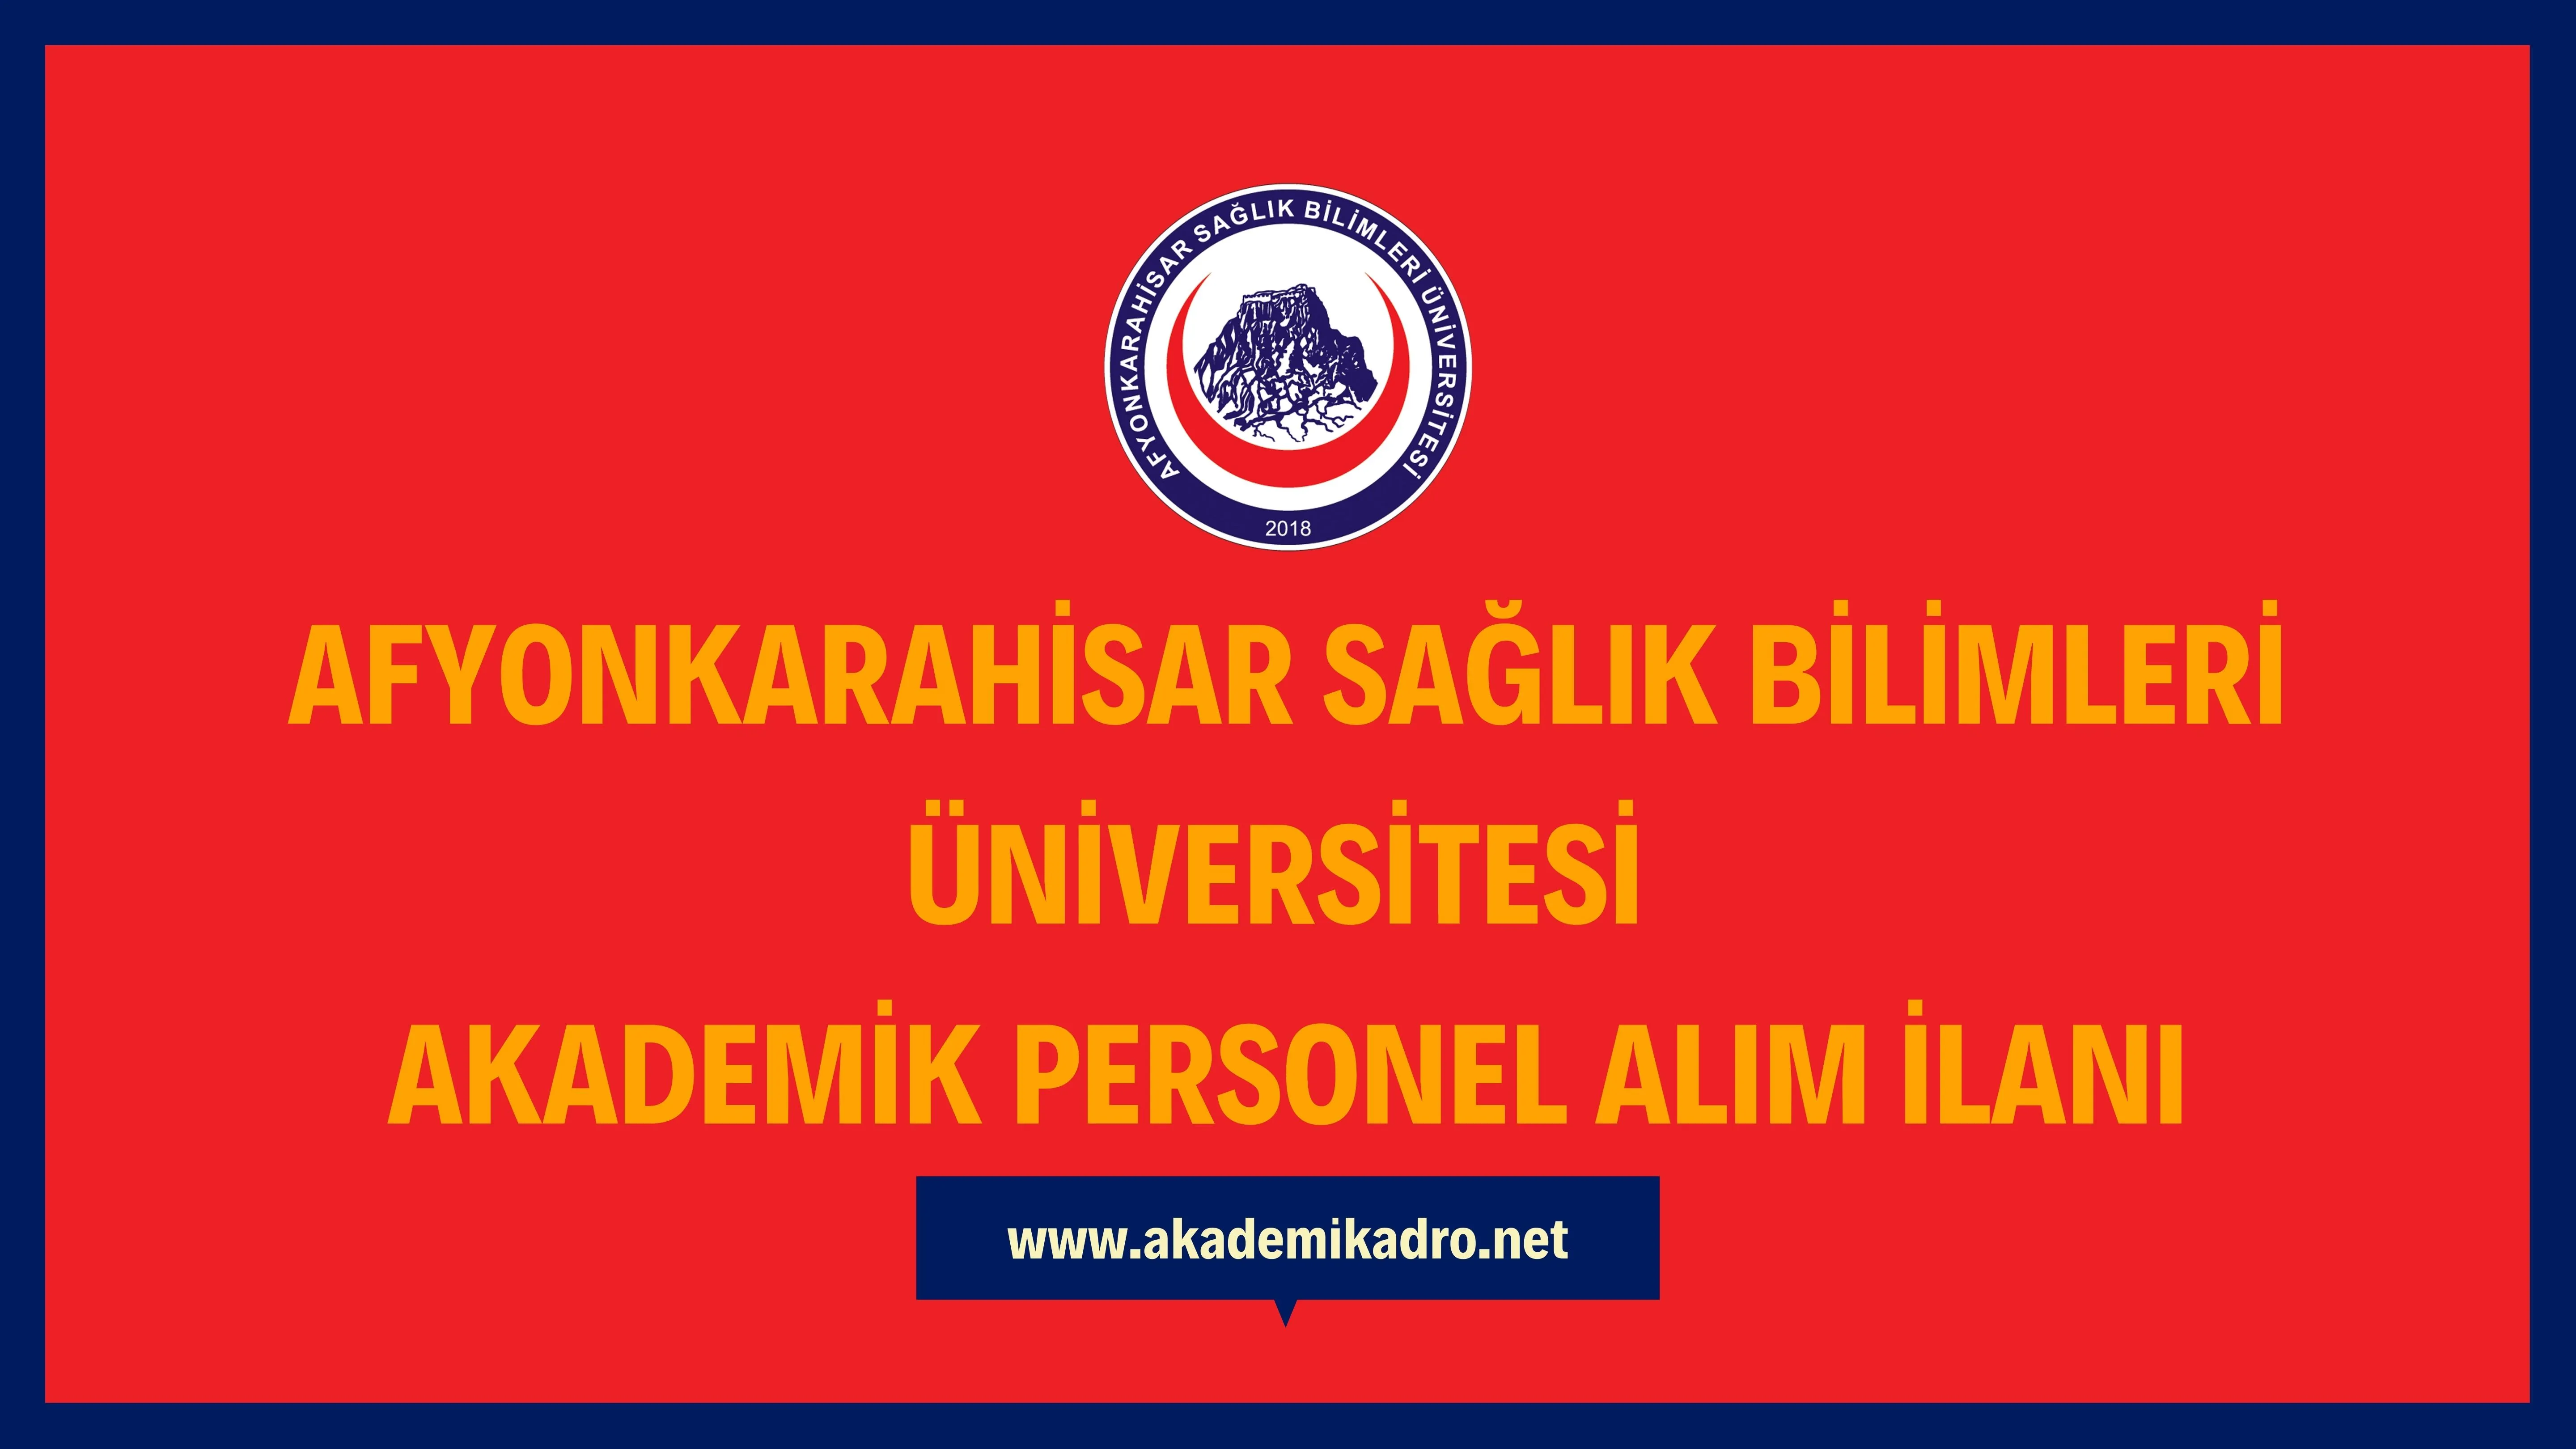 Afyonkarahisar Sağlık Bilimleri Üniversitesi birçok alandan 25 akademik personel alacak.